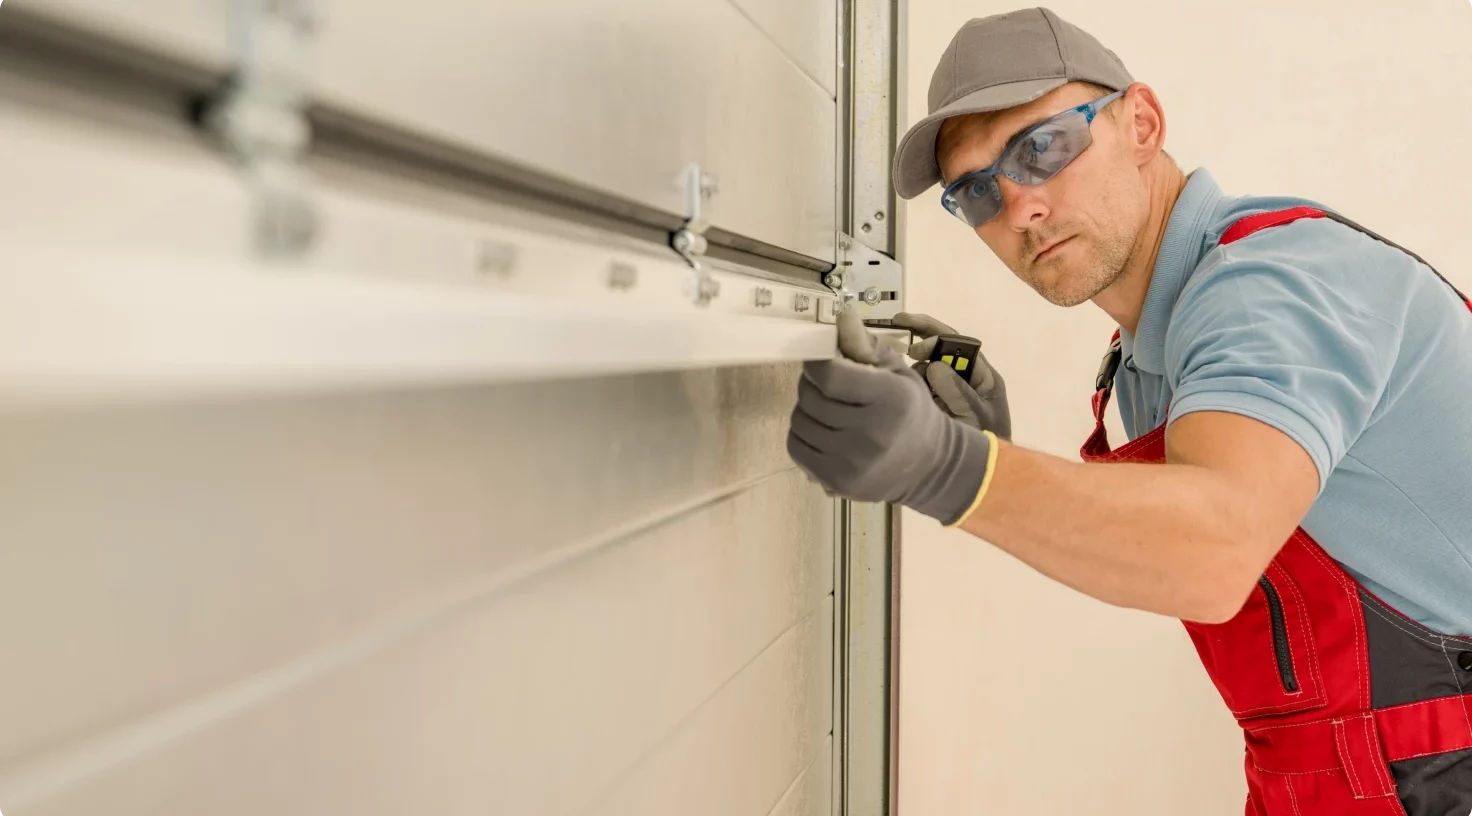 Man Installing New Garage Doors Aspect Ratio 1472 816